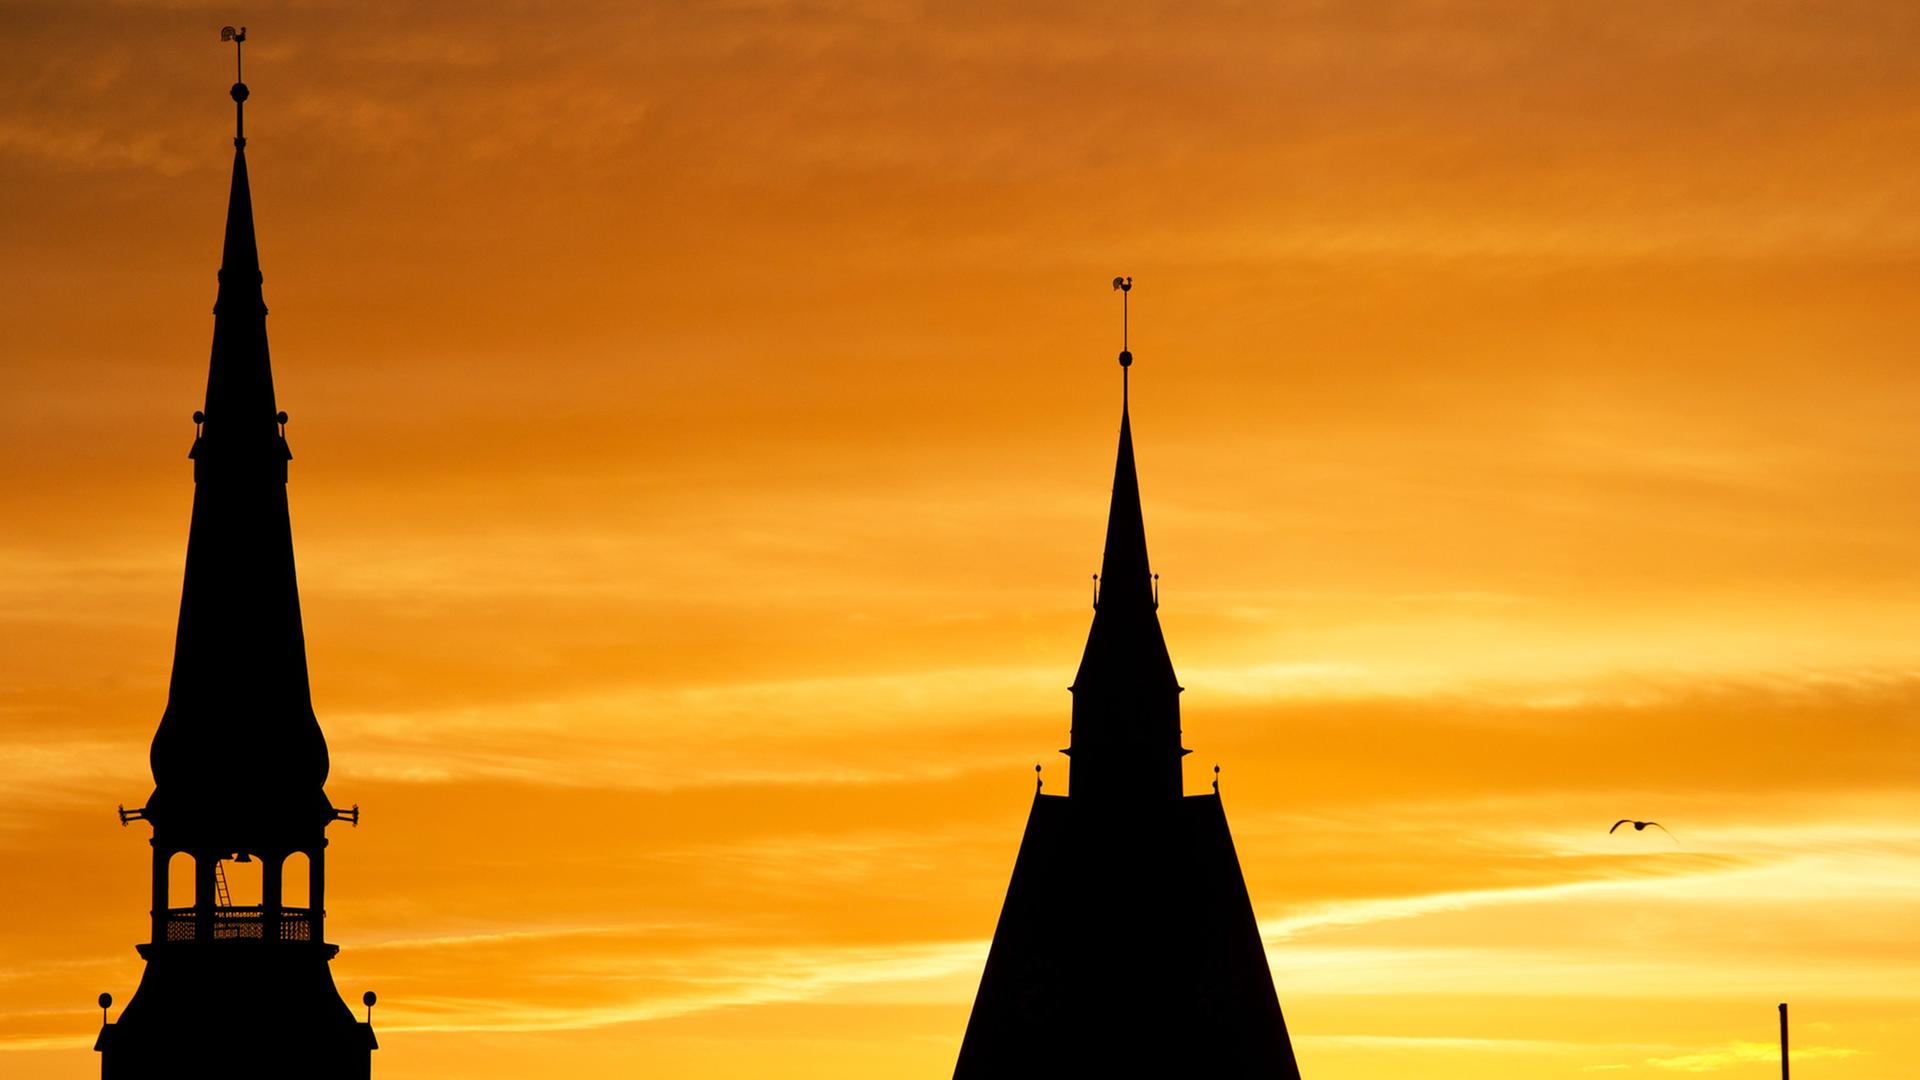 Die Kirchturmspitzen der Kreuzkirche (r) und der Marktkirche (l) sind am 07.01.2014 in Hannover bei Sonnenaufgang als schwarze Silhouetten zu sehen.